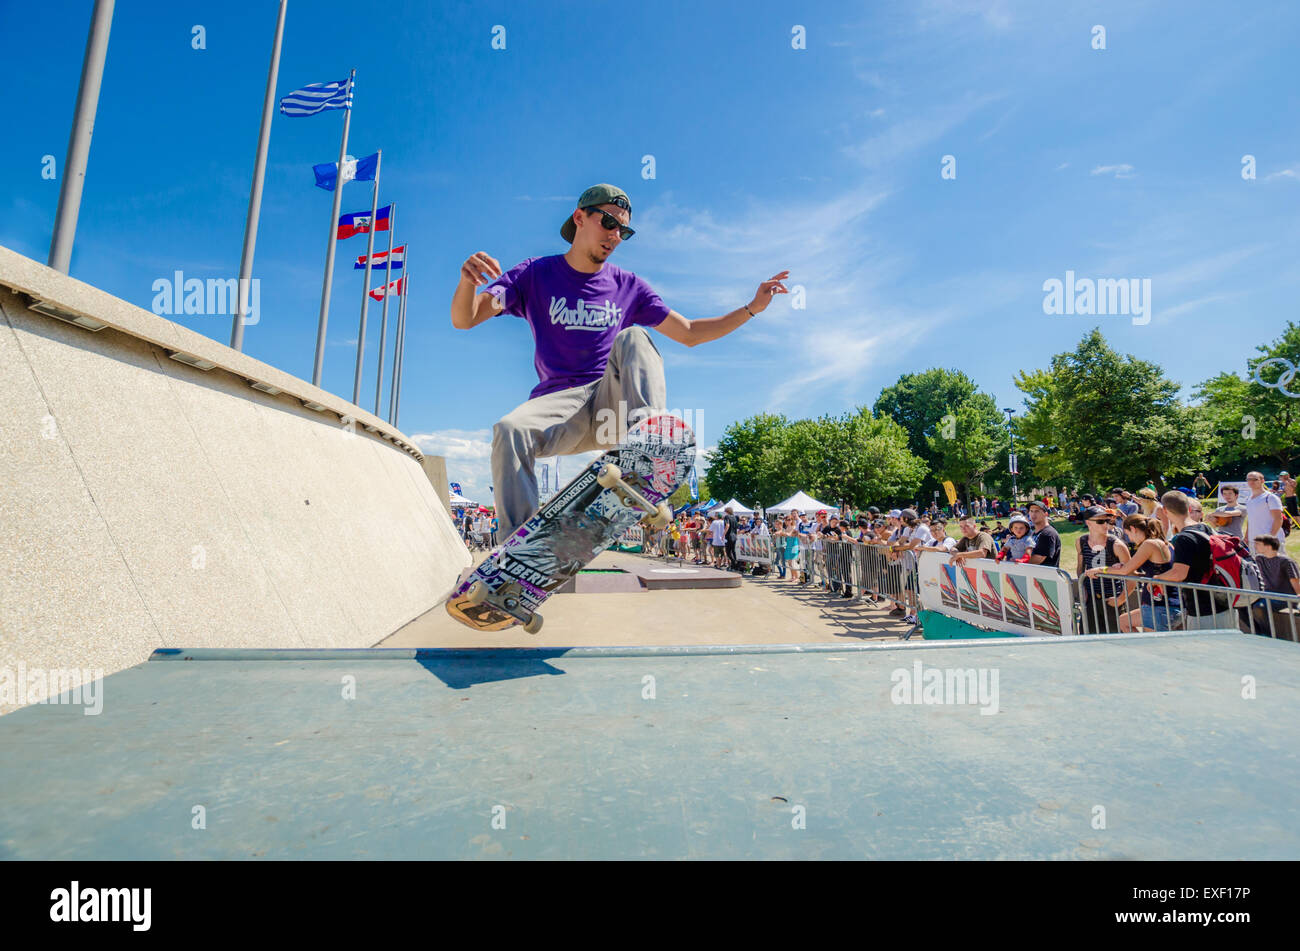 Durante el festival de deportes de acción de patinador 'Jackalope' en Montreal, 2012/07/21 Foto de stock